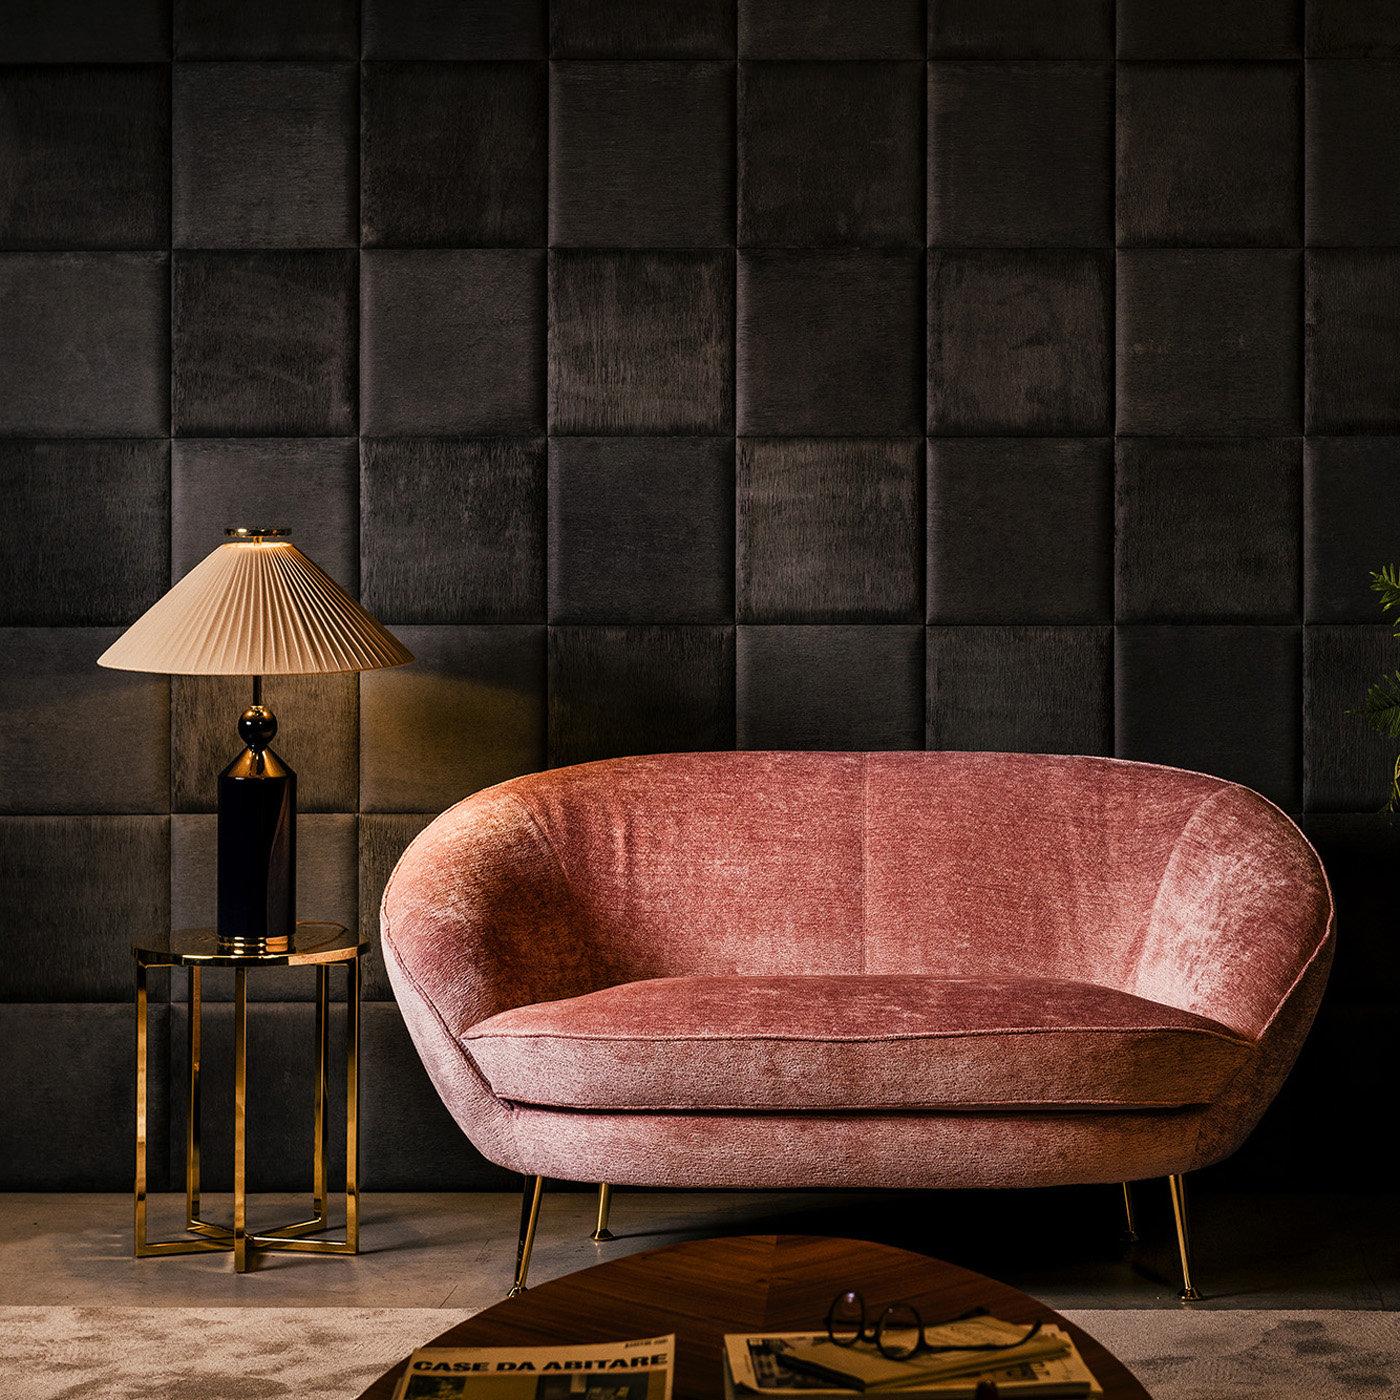 Mid-Century-Appeal und exquisite Schneiderkunst kennzeichnen dieses atemberaubende Sofa mit gewickelten Formen, das einen einzigartigen und raffinierten Look in ein modernes Interieur bringt. Das Gestell aus Buchenholz hat eine abgerundete